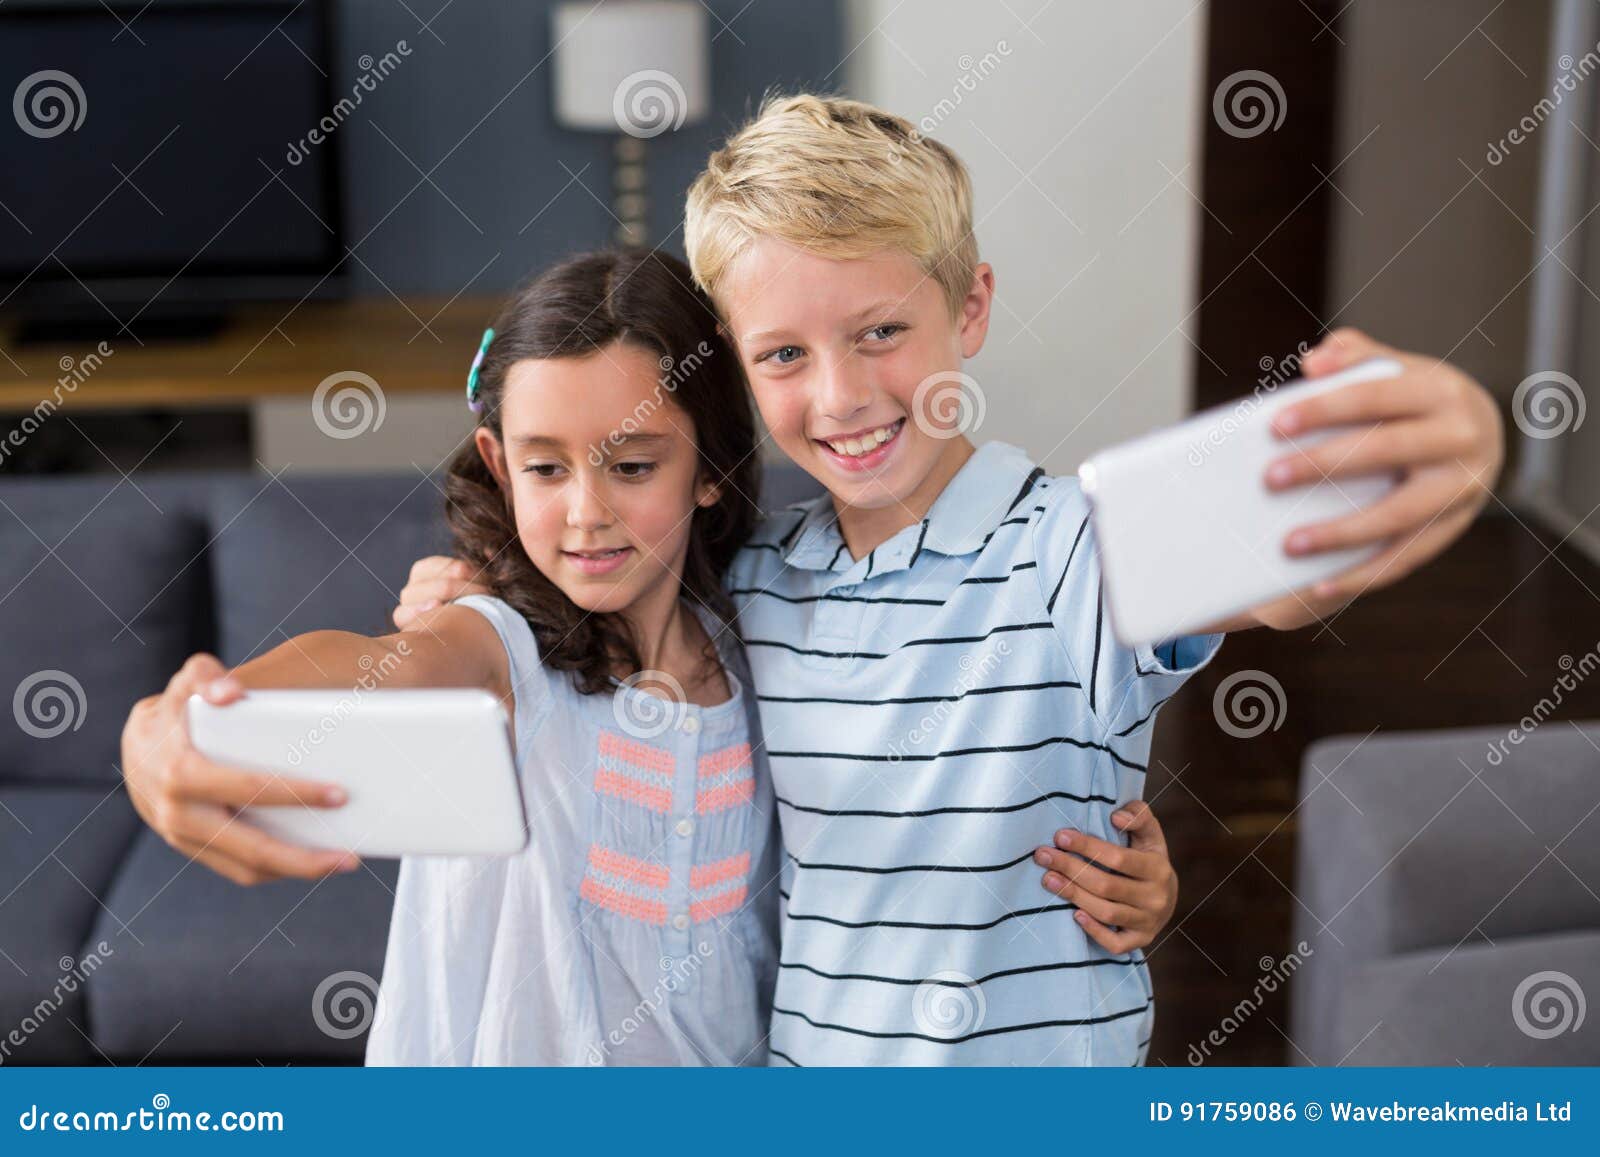 Siblings Taking Selfie on Their Mobile Phone in Living Room Stock Photo ...